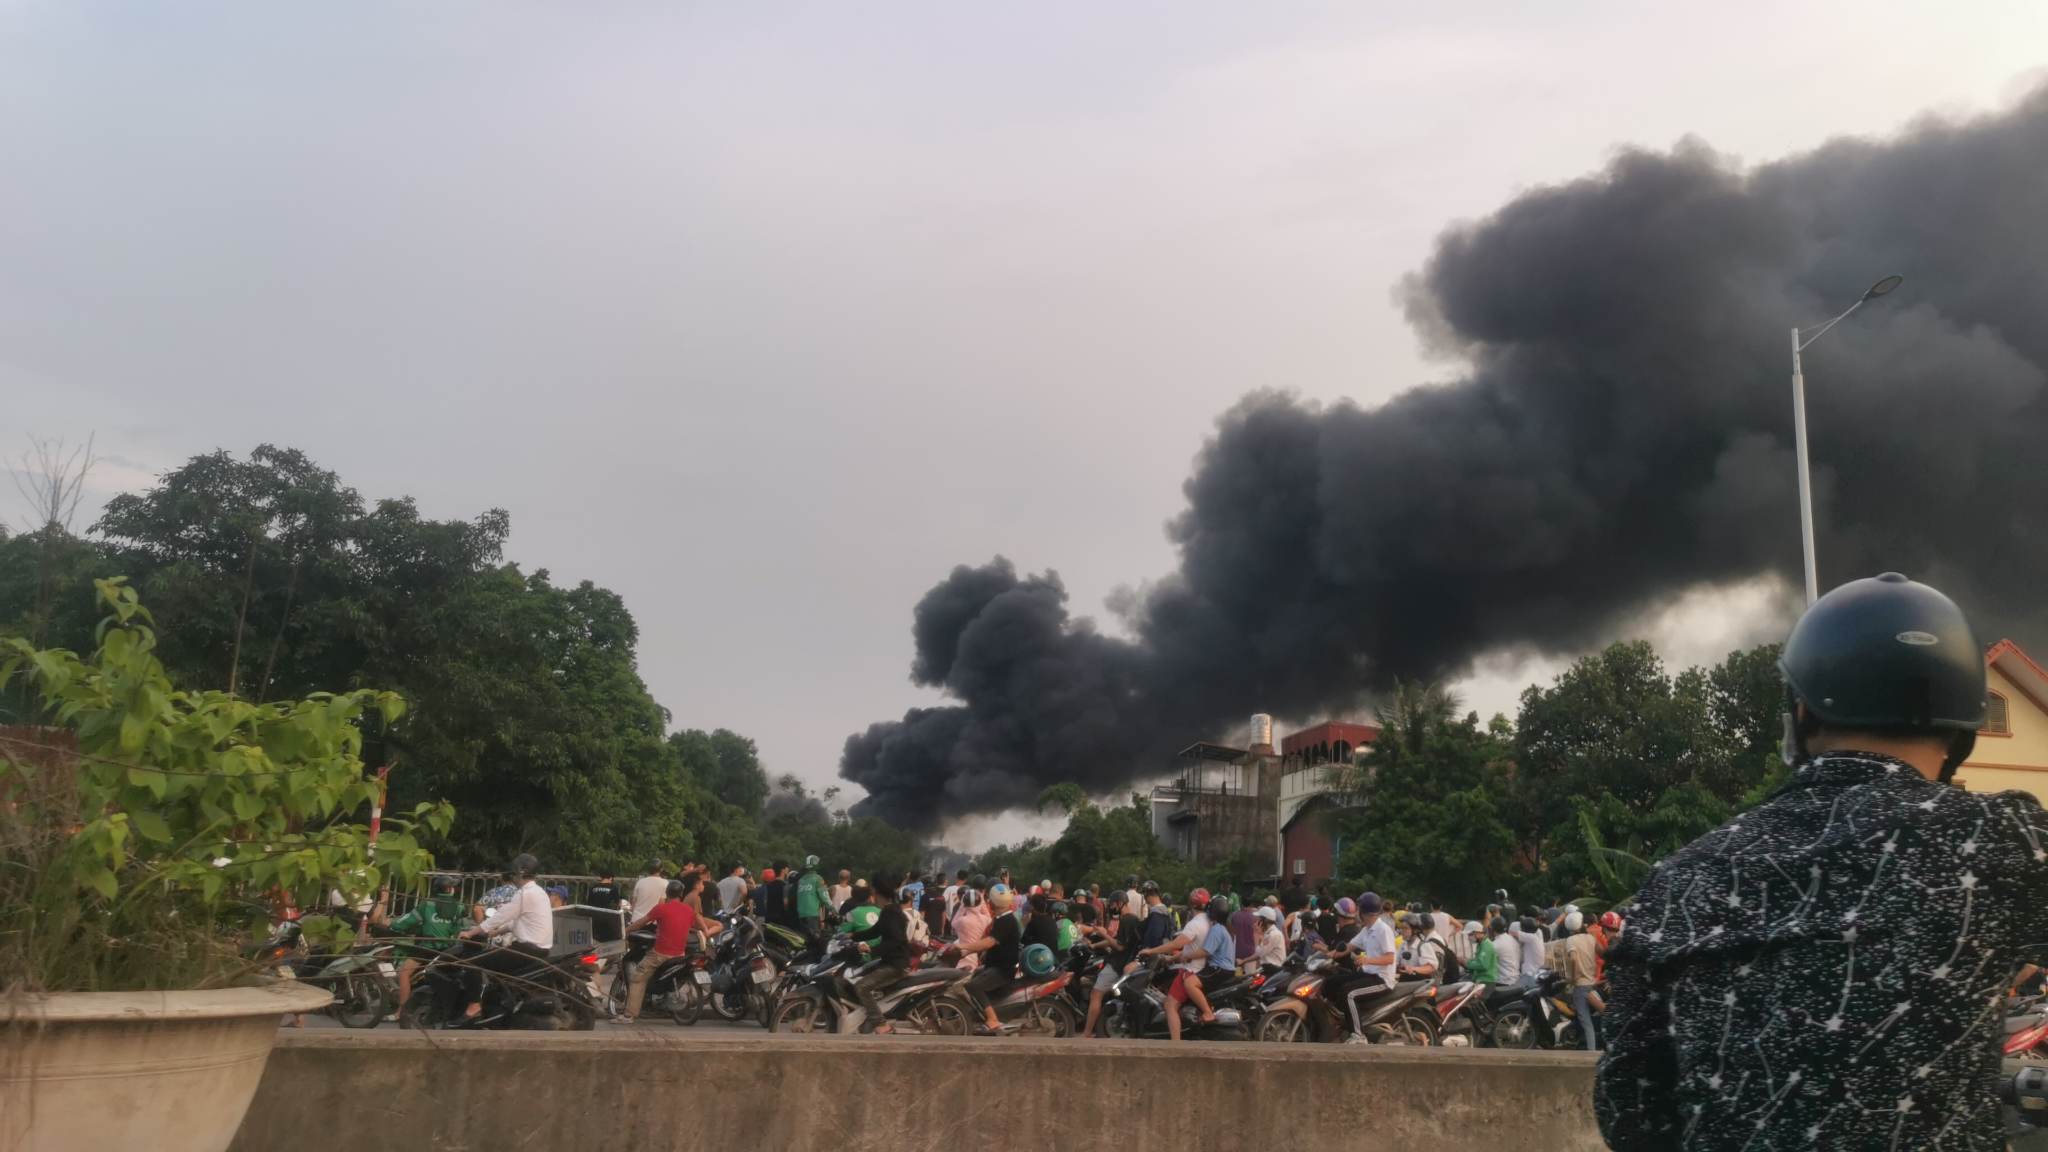 Biển lửa bao trùm gara ở Hà Nội, nhiều ô tô bị thiêu rụi - 2